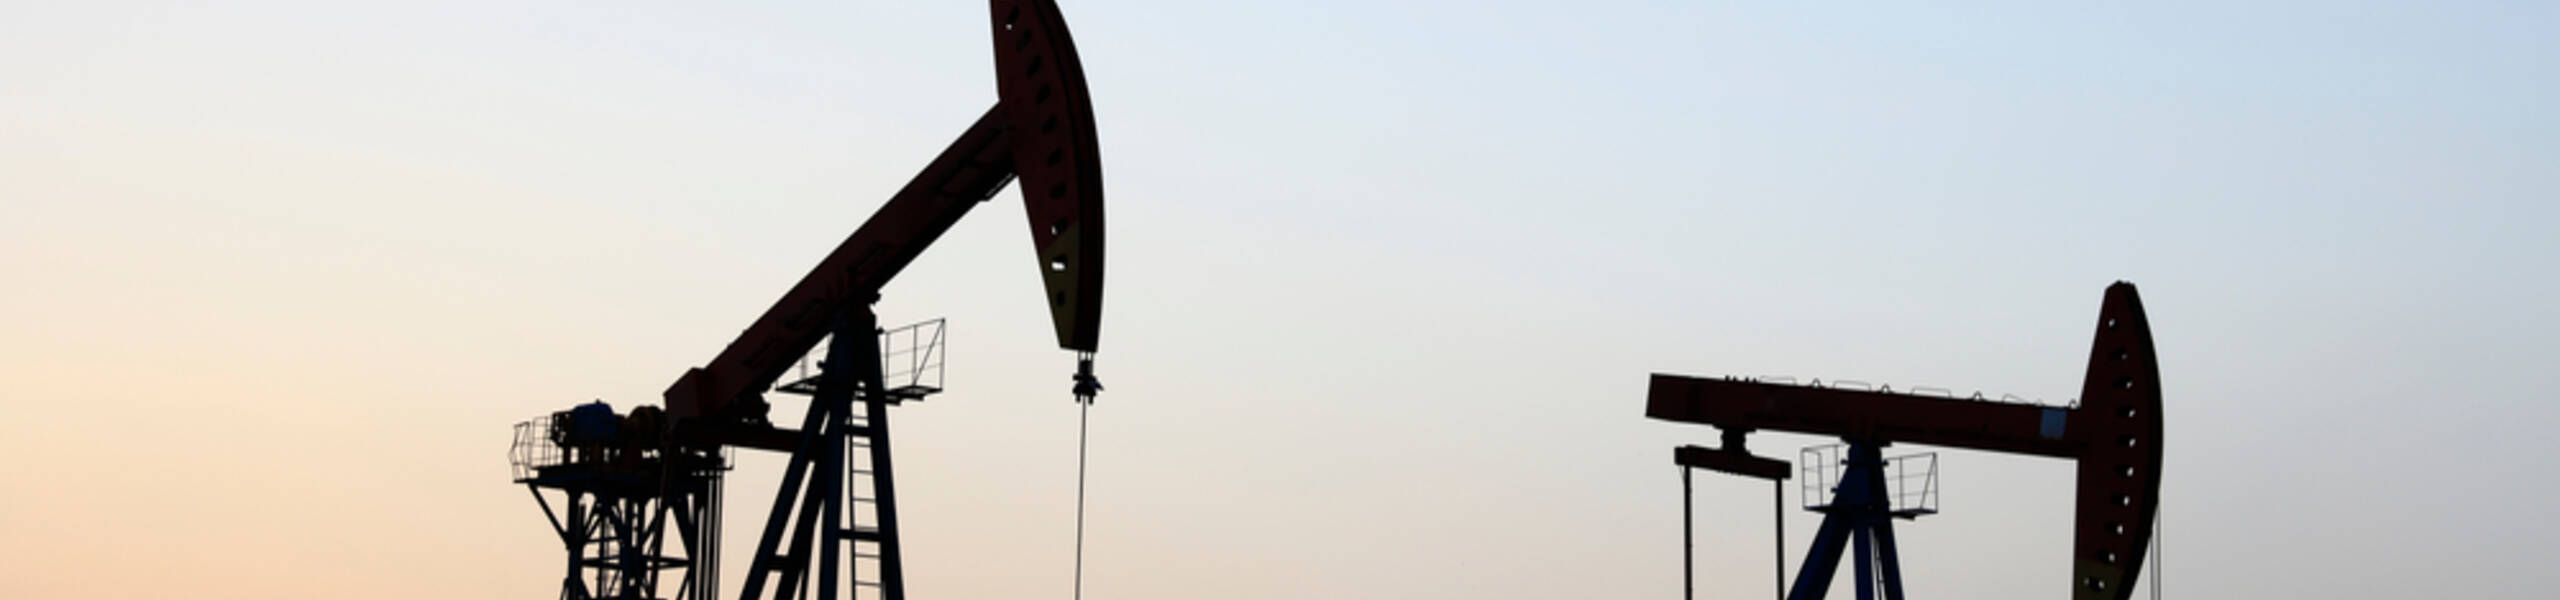 تیل اور قدرتی گیس کی قیمتیں کس چیز کے انتظارمیں ہیں؟